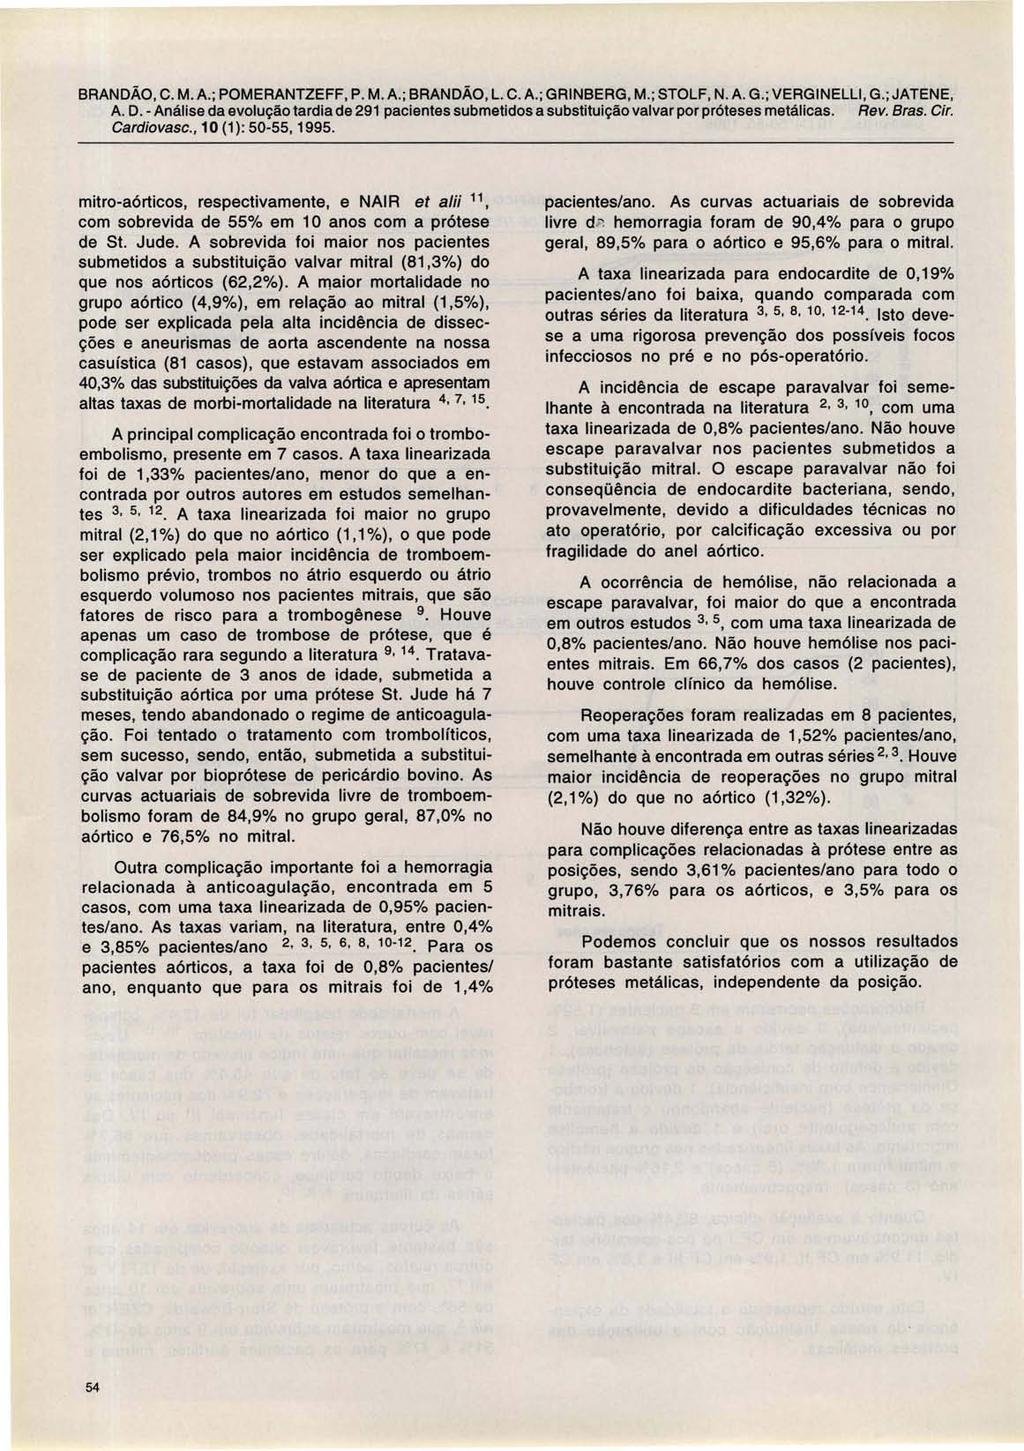 BRANDÃO, C. M. A.; POMERANTZEFF, P. M. A.; BRANDÃO, L. C. A. ; GRINBERG, M. ; STOLF, N. A. G.; VERGINELLI, G.; JATENE, Cardiovasc., 10 (1): 50-55, 1995.